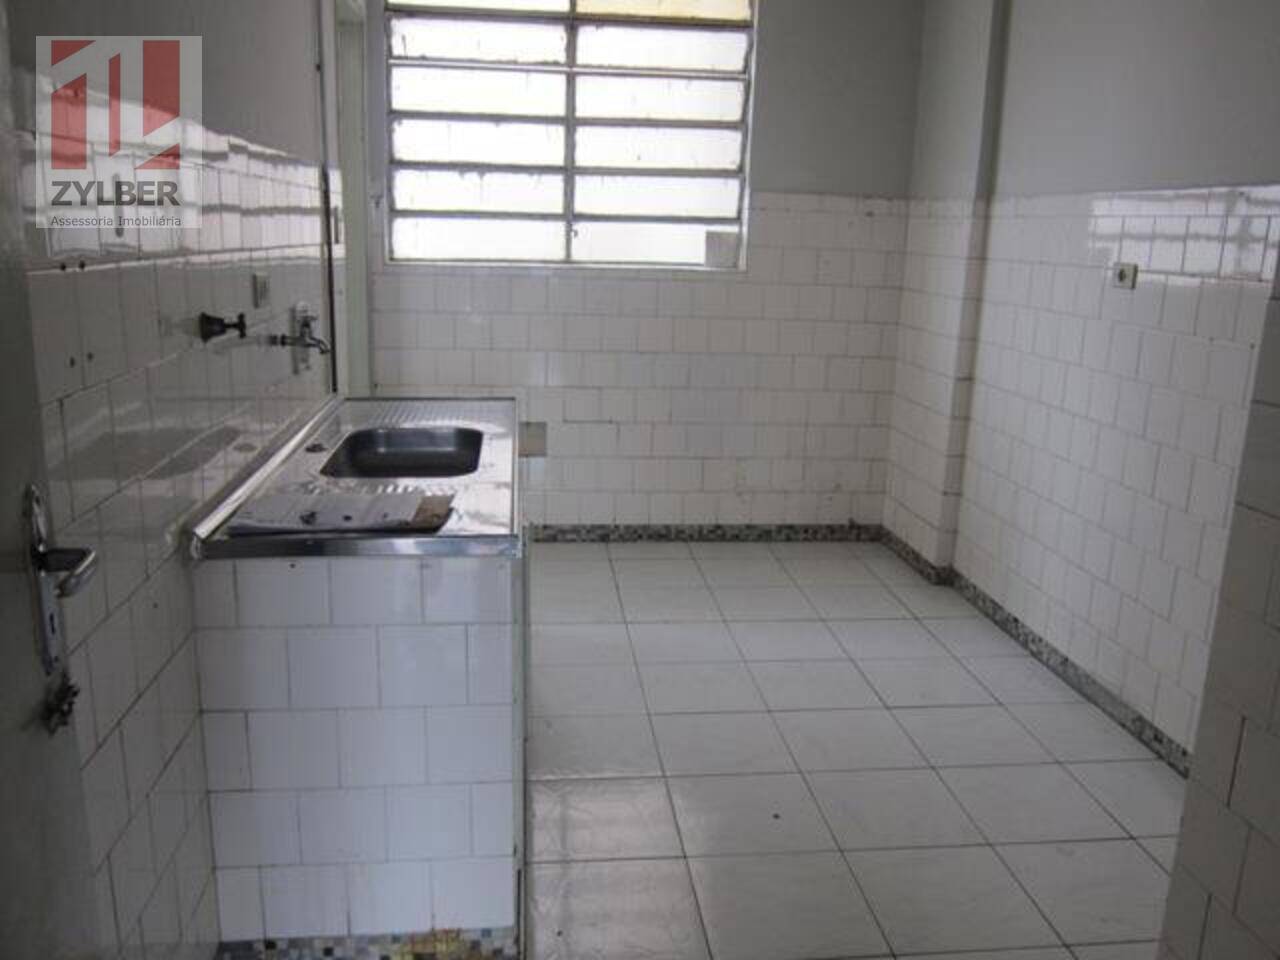 Apartamento Bom Retiro, São Paulo - SP